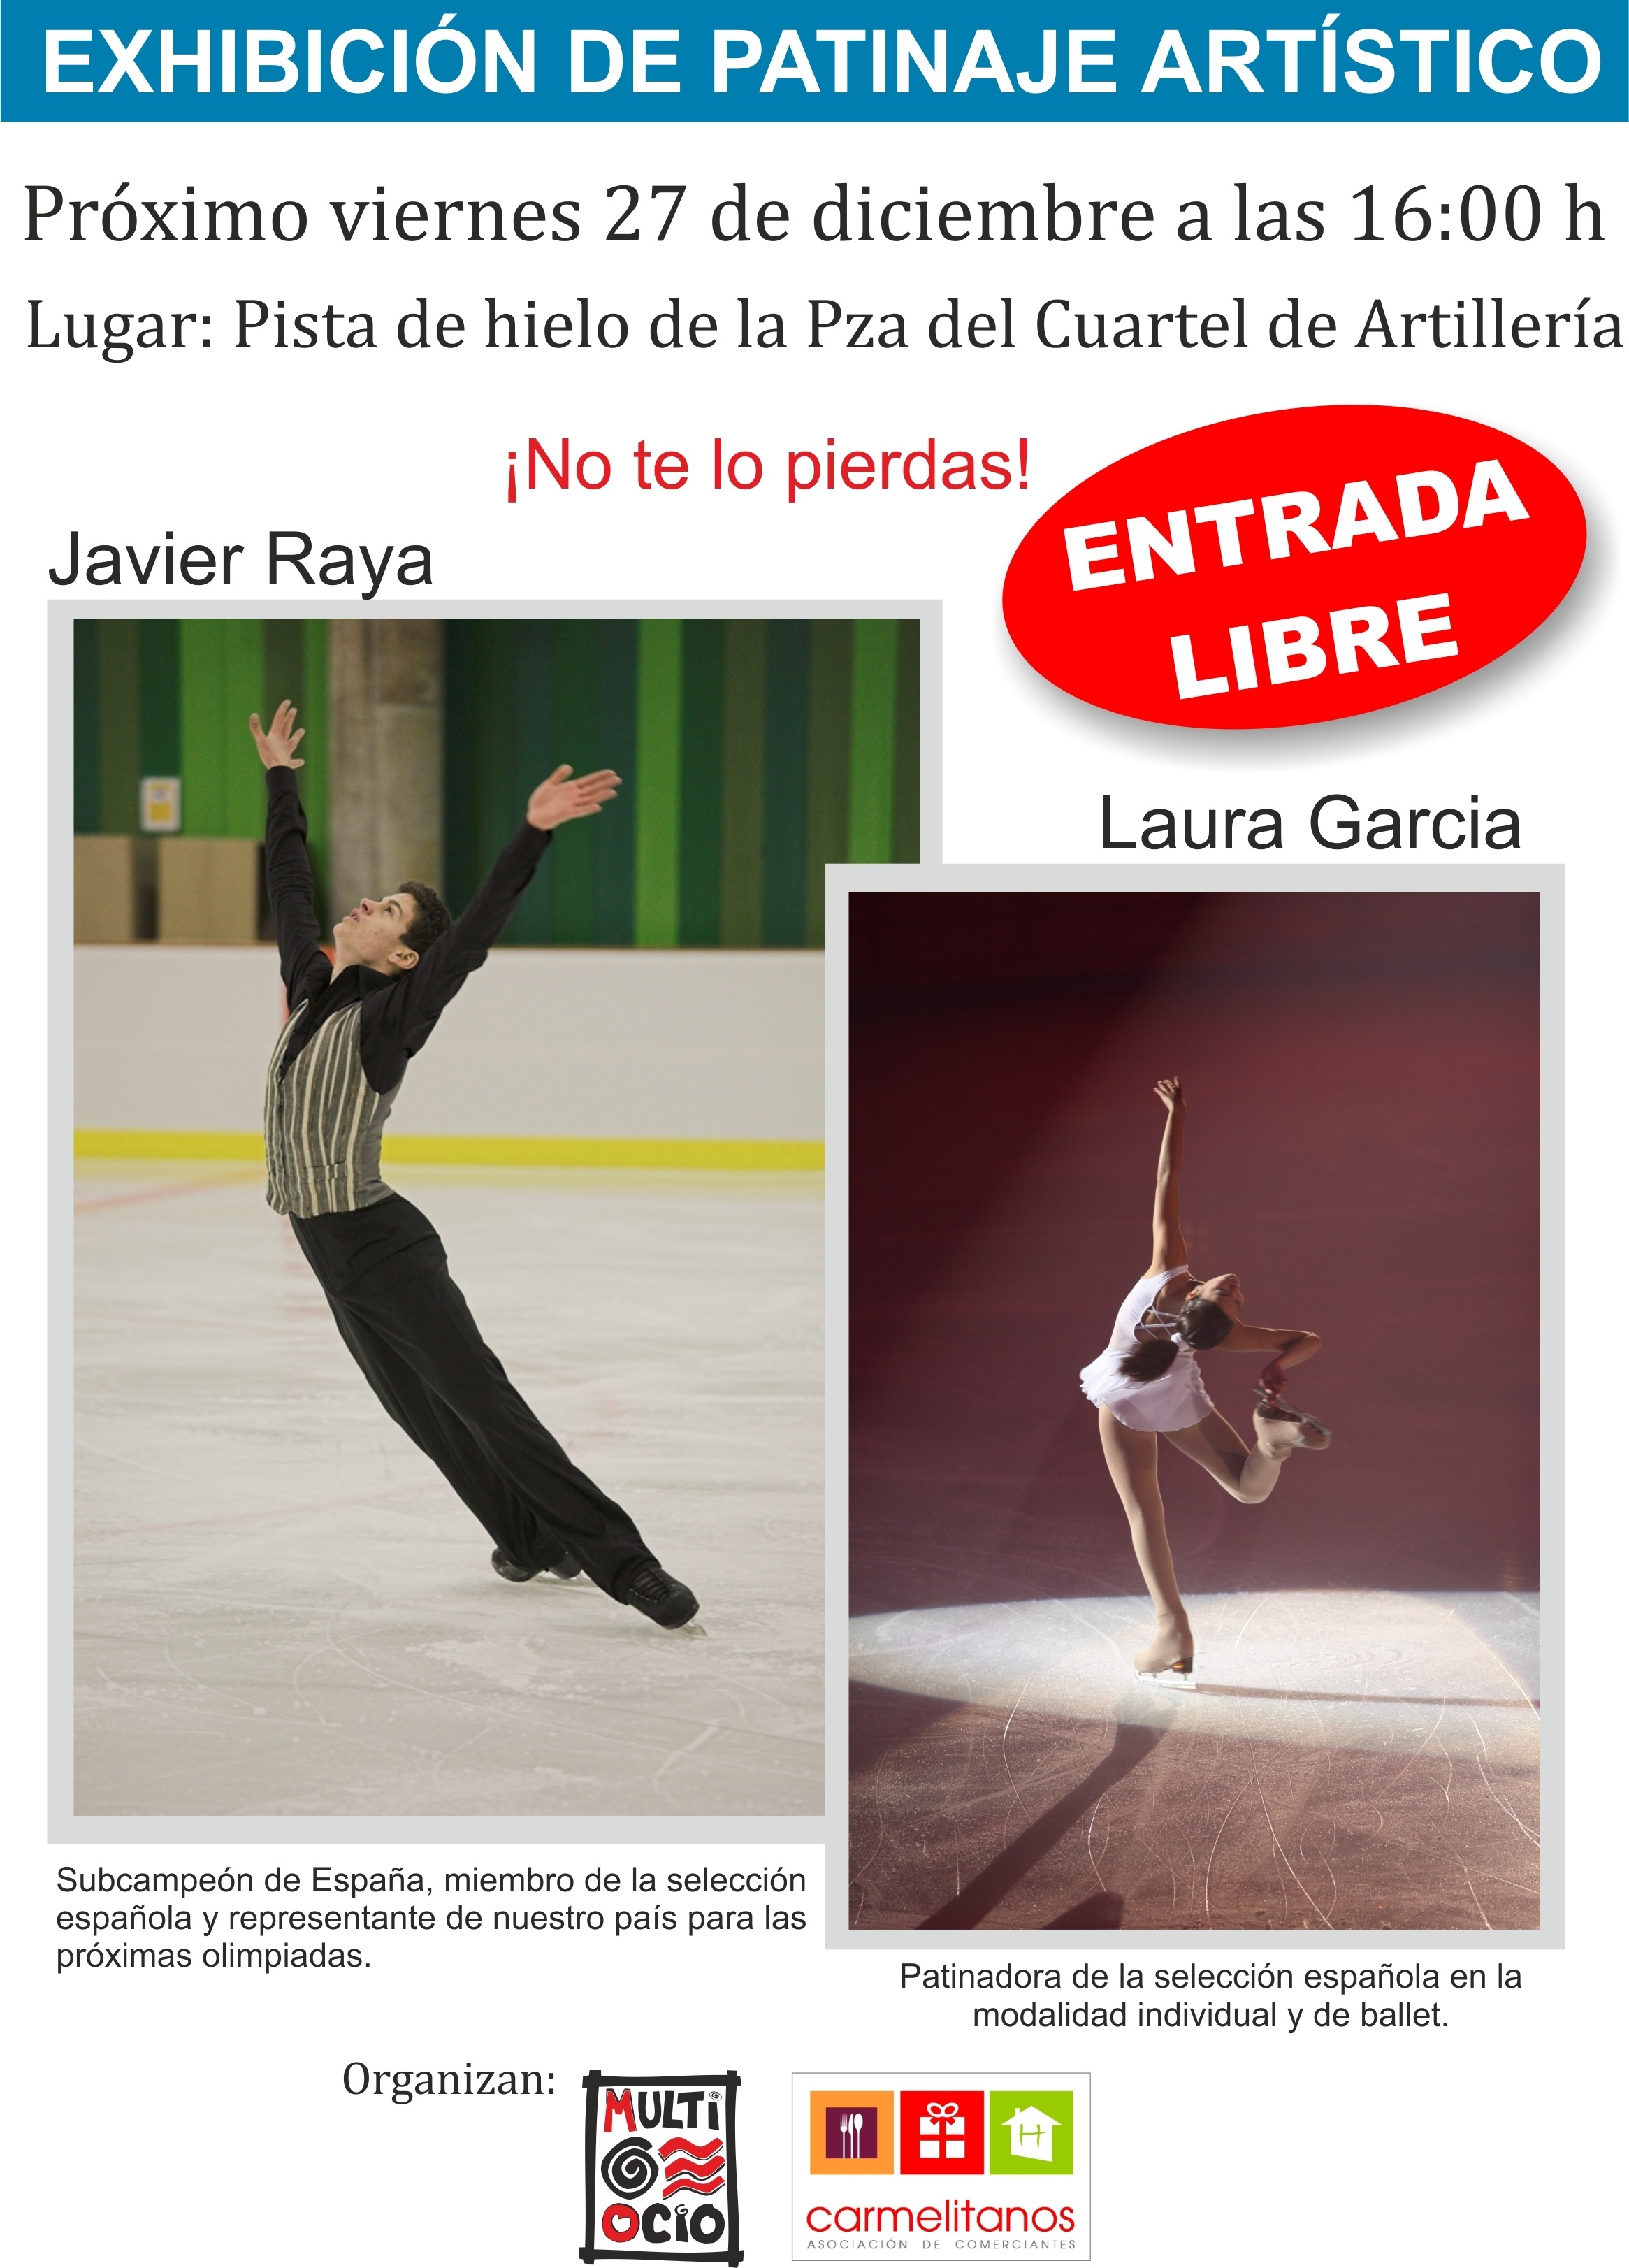 El subcampeón de España en patinaje realiza este viernes una exhibición artística en el Cuartel de Artillería de Murcia